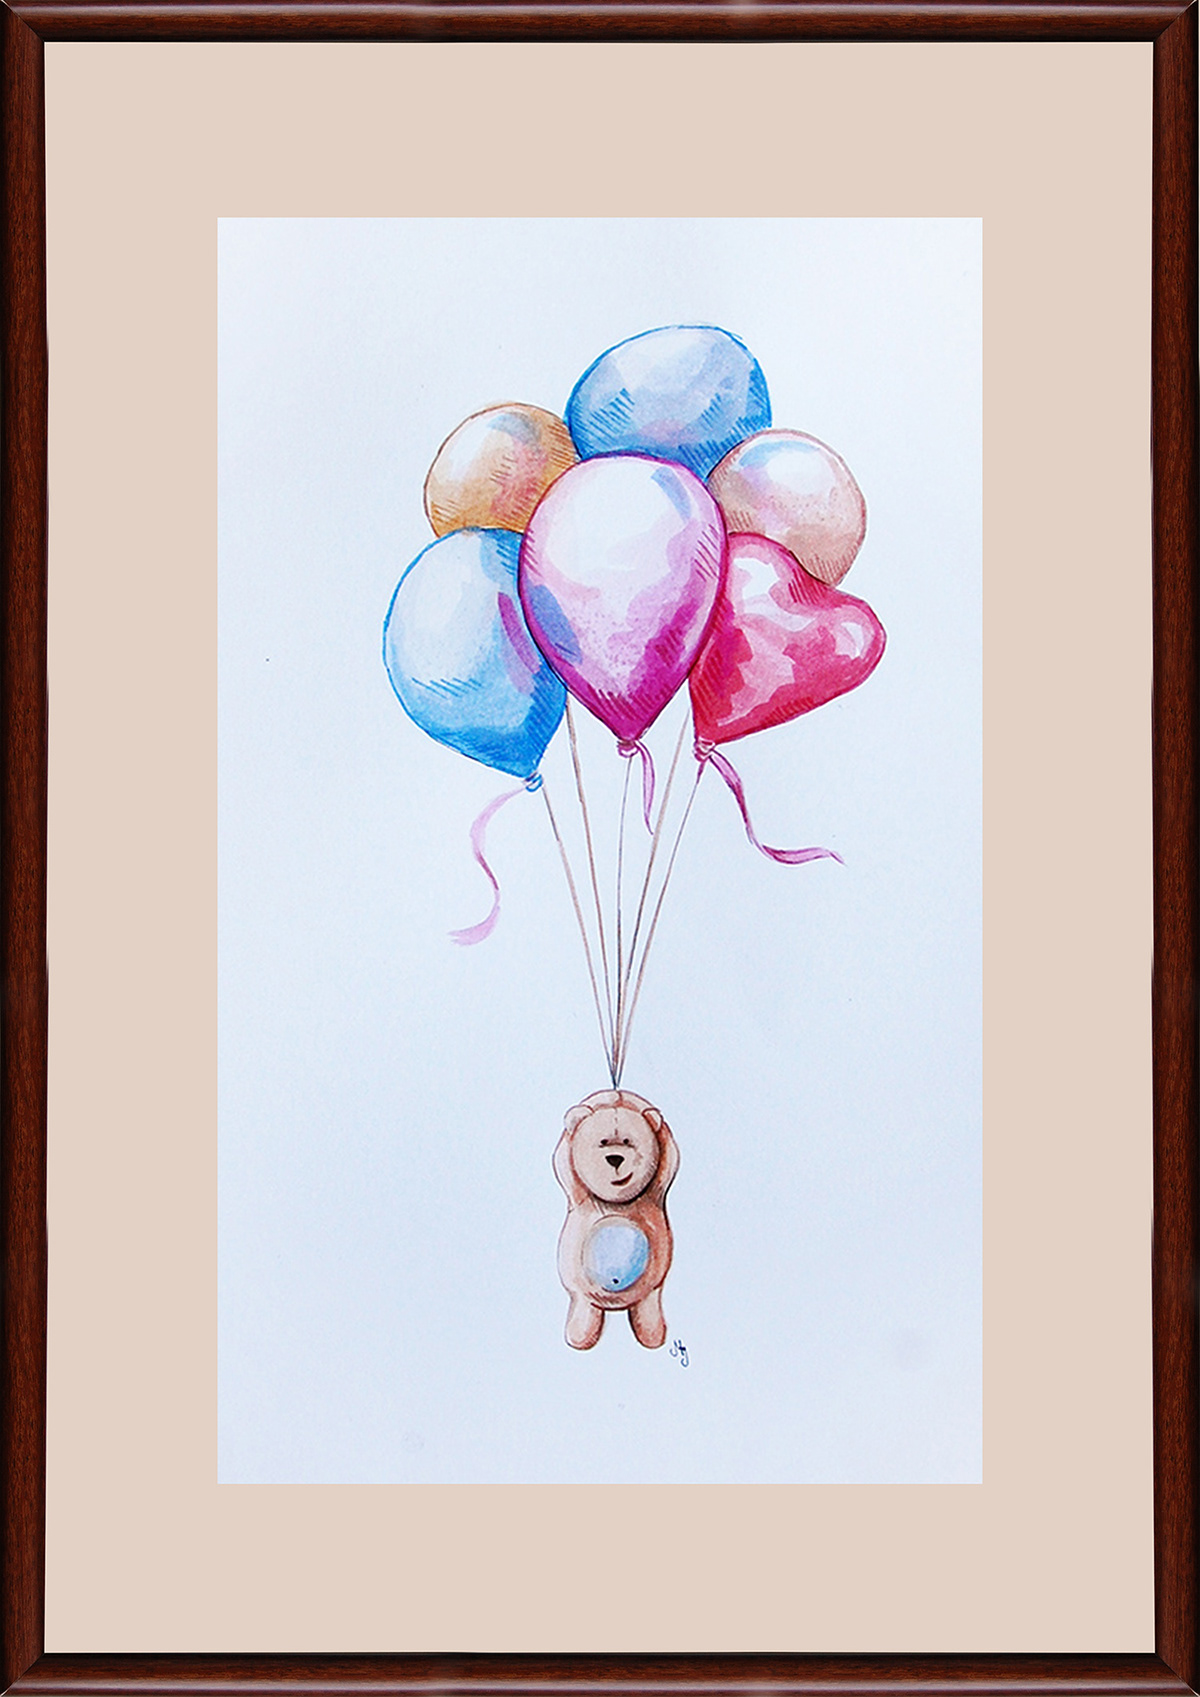 marta jasińska cuddly bear balloons watercolor